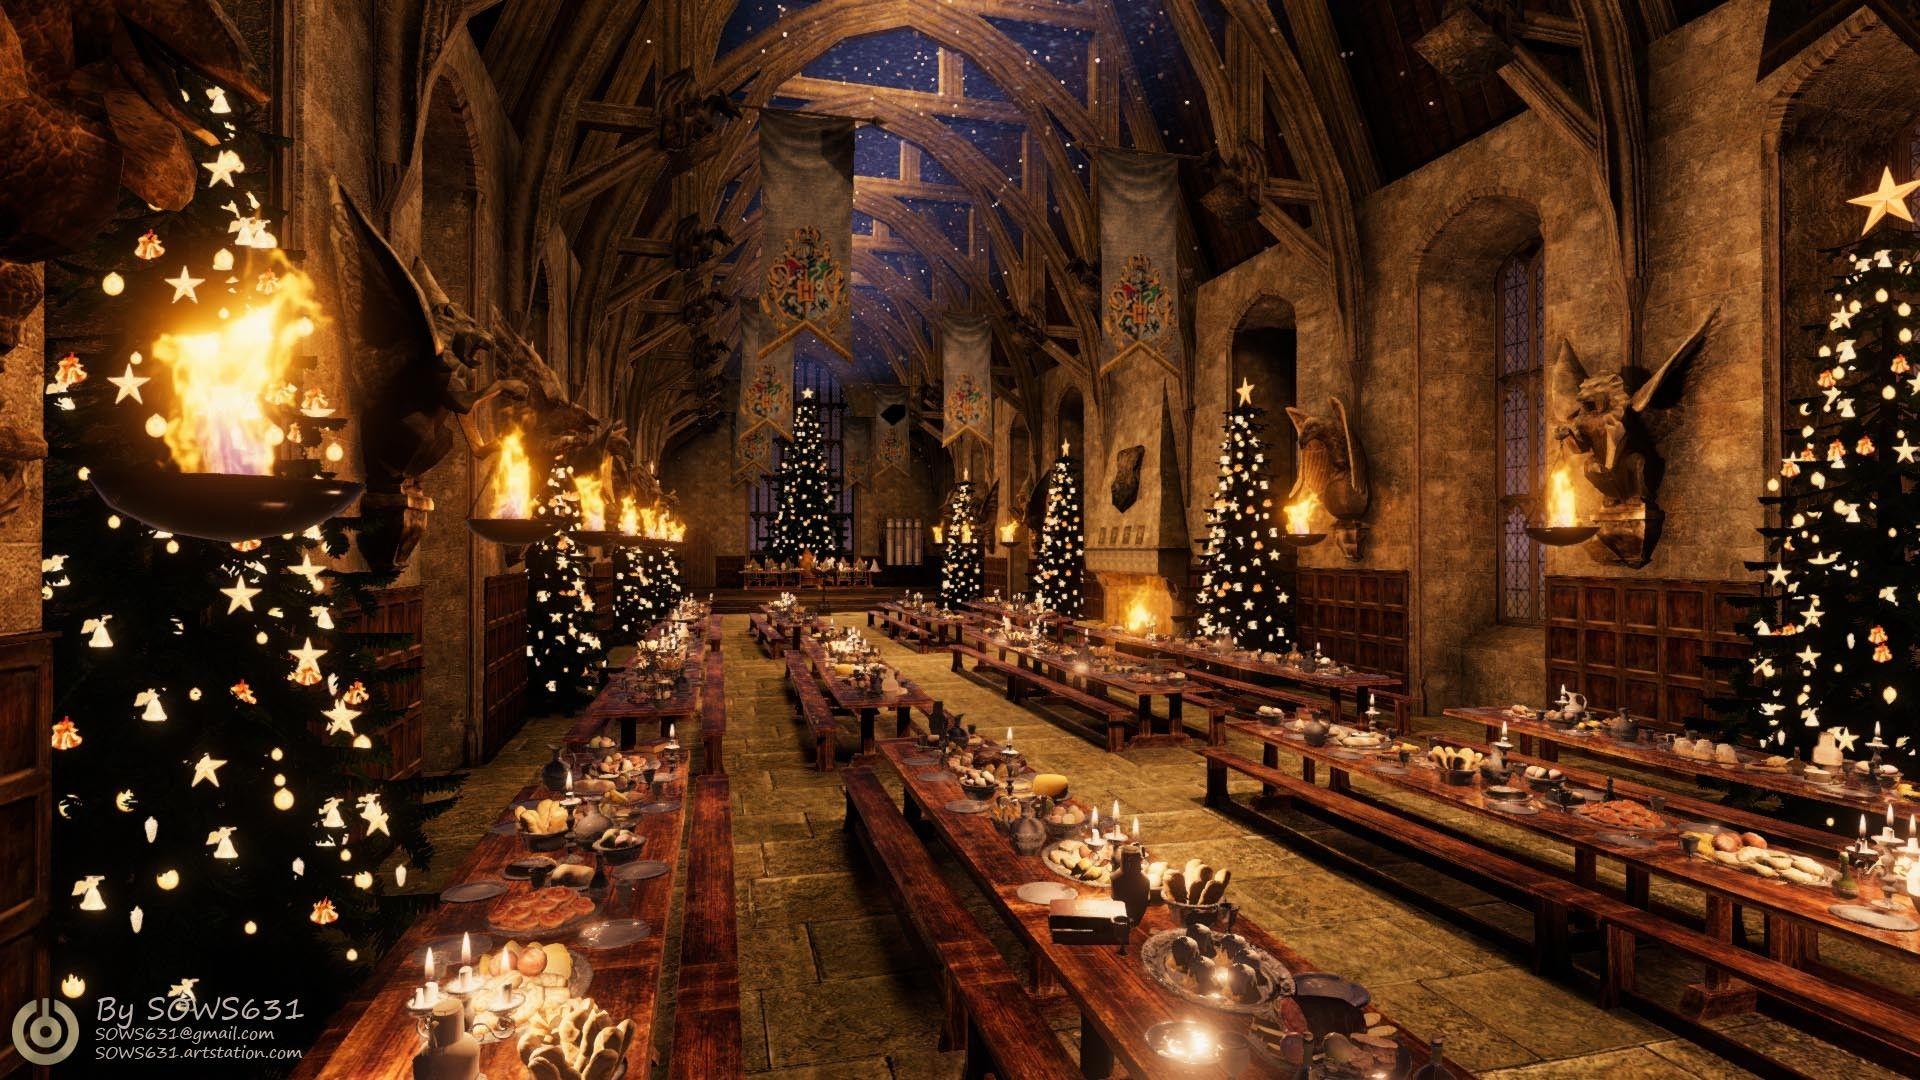 Hình nền Giáng sinh tại Hogwarts miễn phí hàng đầu: Thưởng thức những hình nền Giáng sinh tuyệt đẹp tại Hogwarts ở đây. Các hình ảnh tuyệt đẹp và đầy ma lực được chọn lọc kỹ càng để mang đến cho bạn không gian giáng sinh hoàn hảo. Tải về ngay để trang trí và tạo không gian giáng sinh nỗi bật.